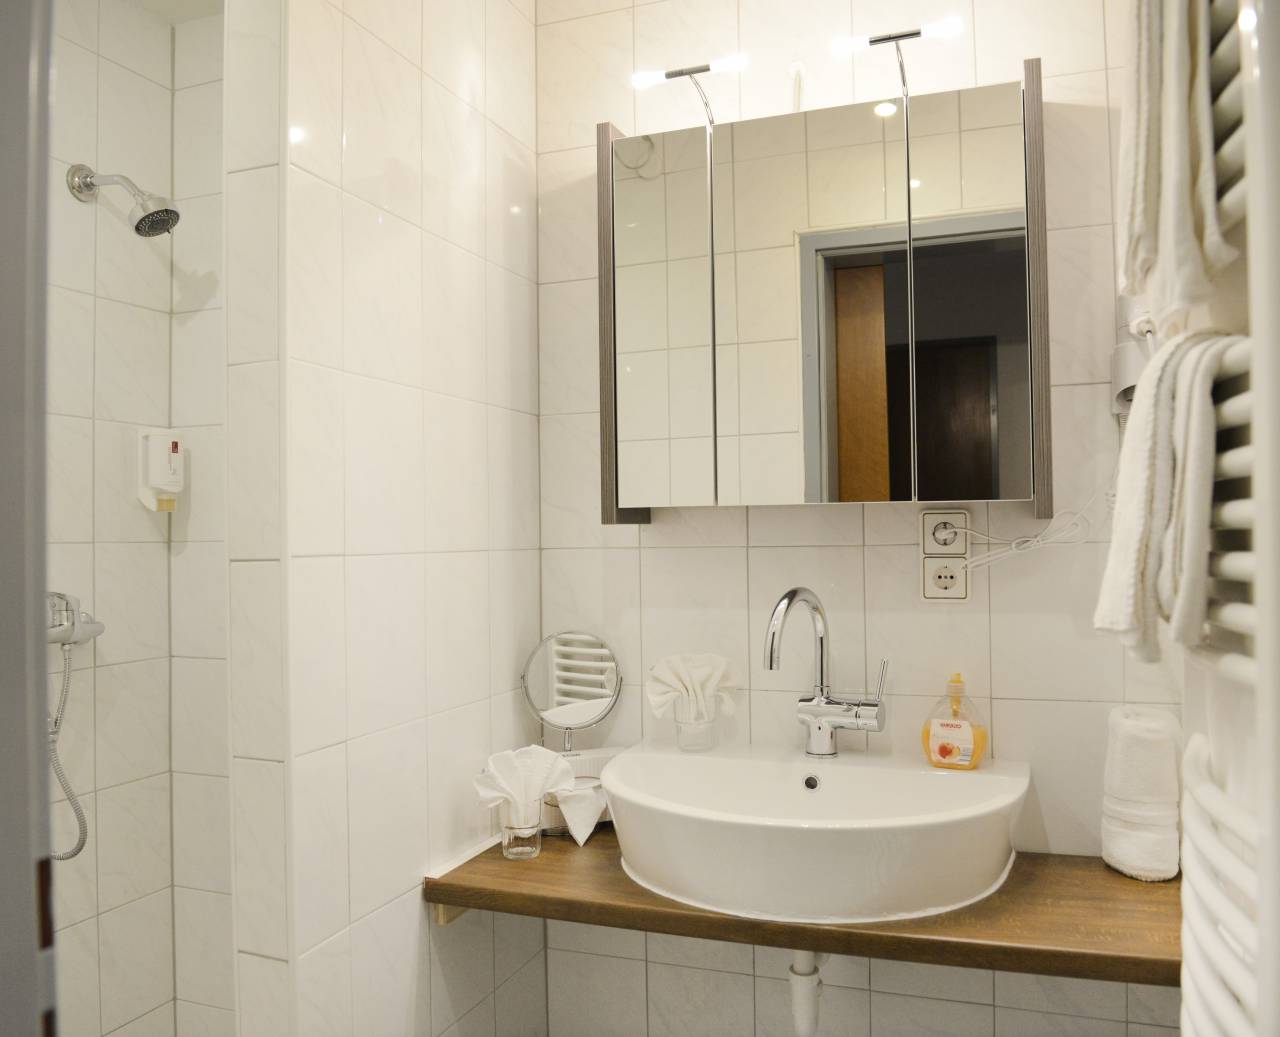 Weiß gefliestes Badezimmer mit Dusche, Waschbecken, Spiegelkasten und Handtuchtrockner